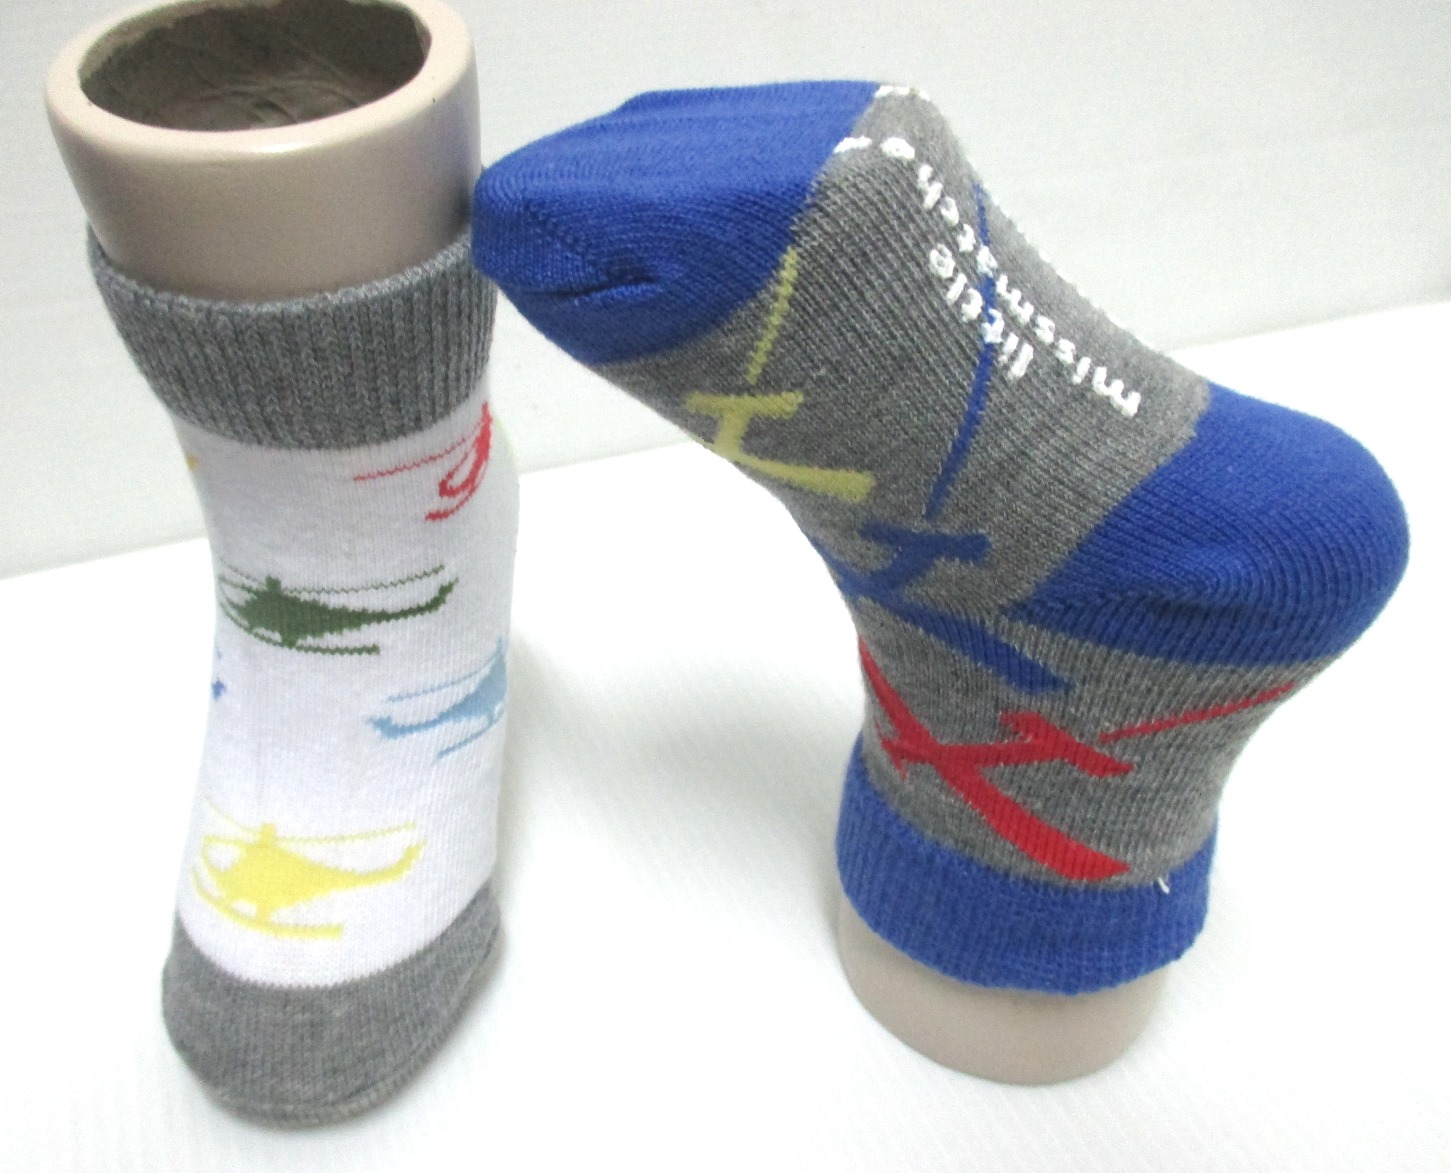 boys type cotton socks helicopter design socks